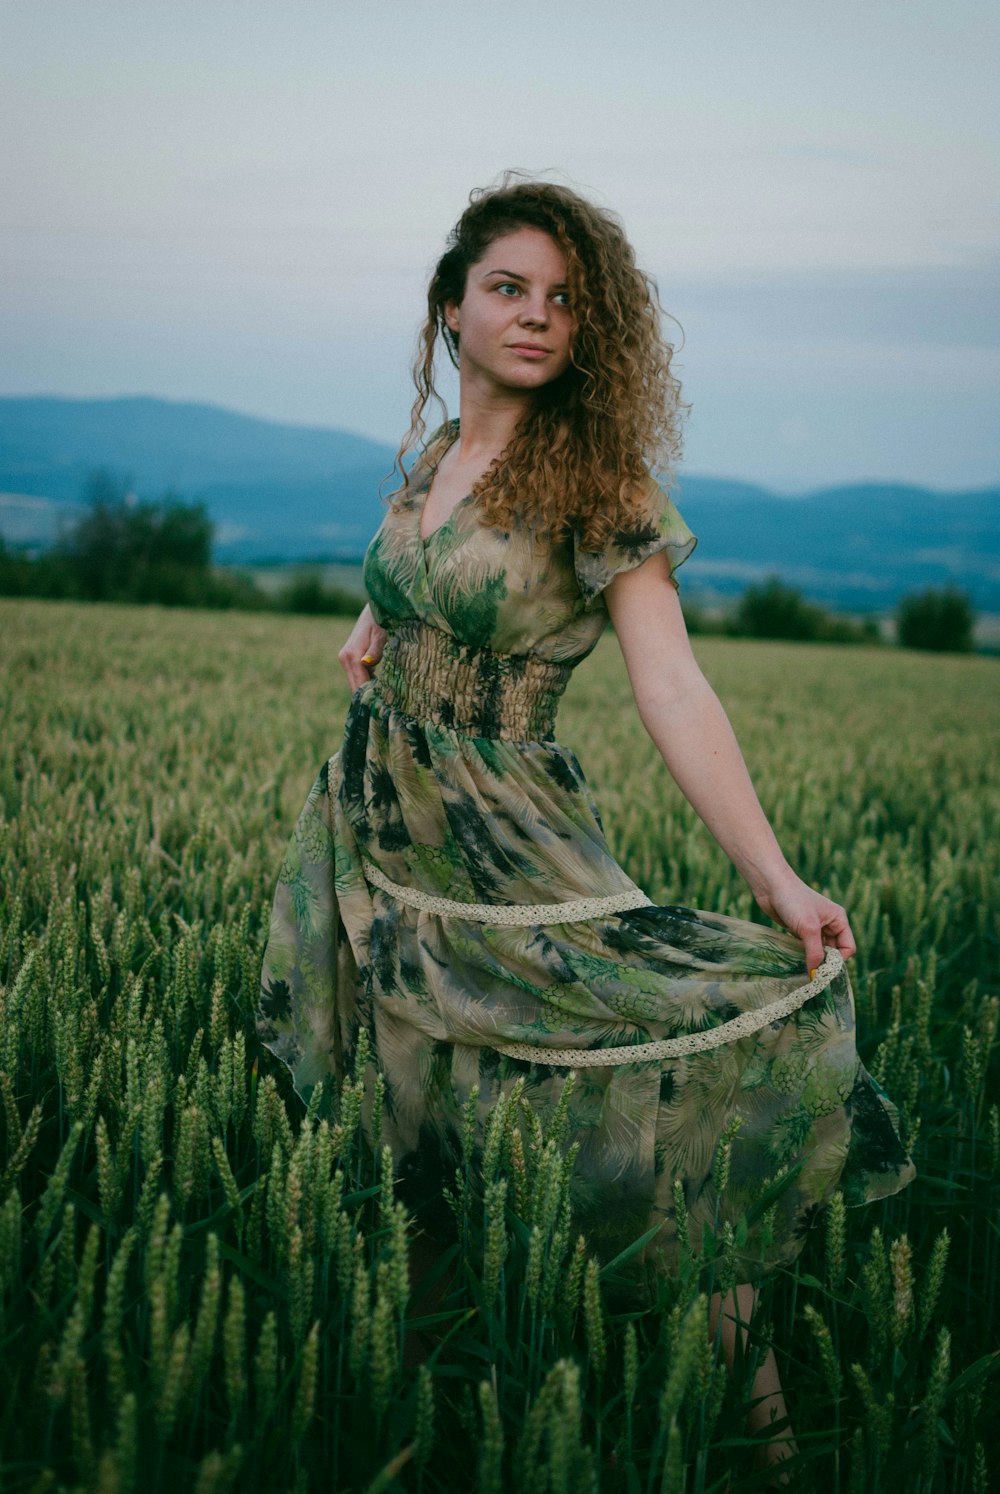 낮 동안 푸른 잔디밭에 서 있는 녹색과 갈색 꽃 드레스를 입은 여자